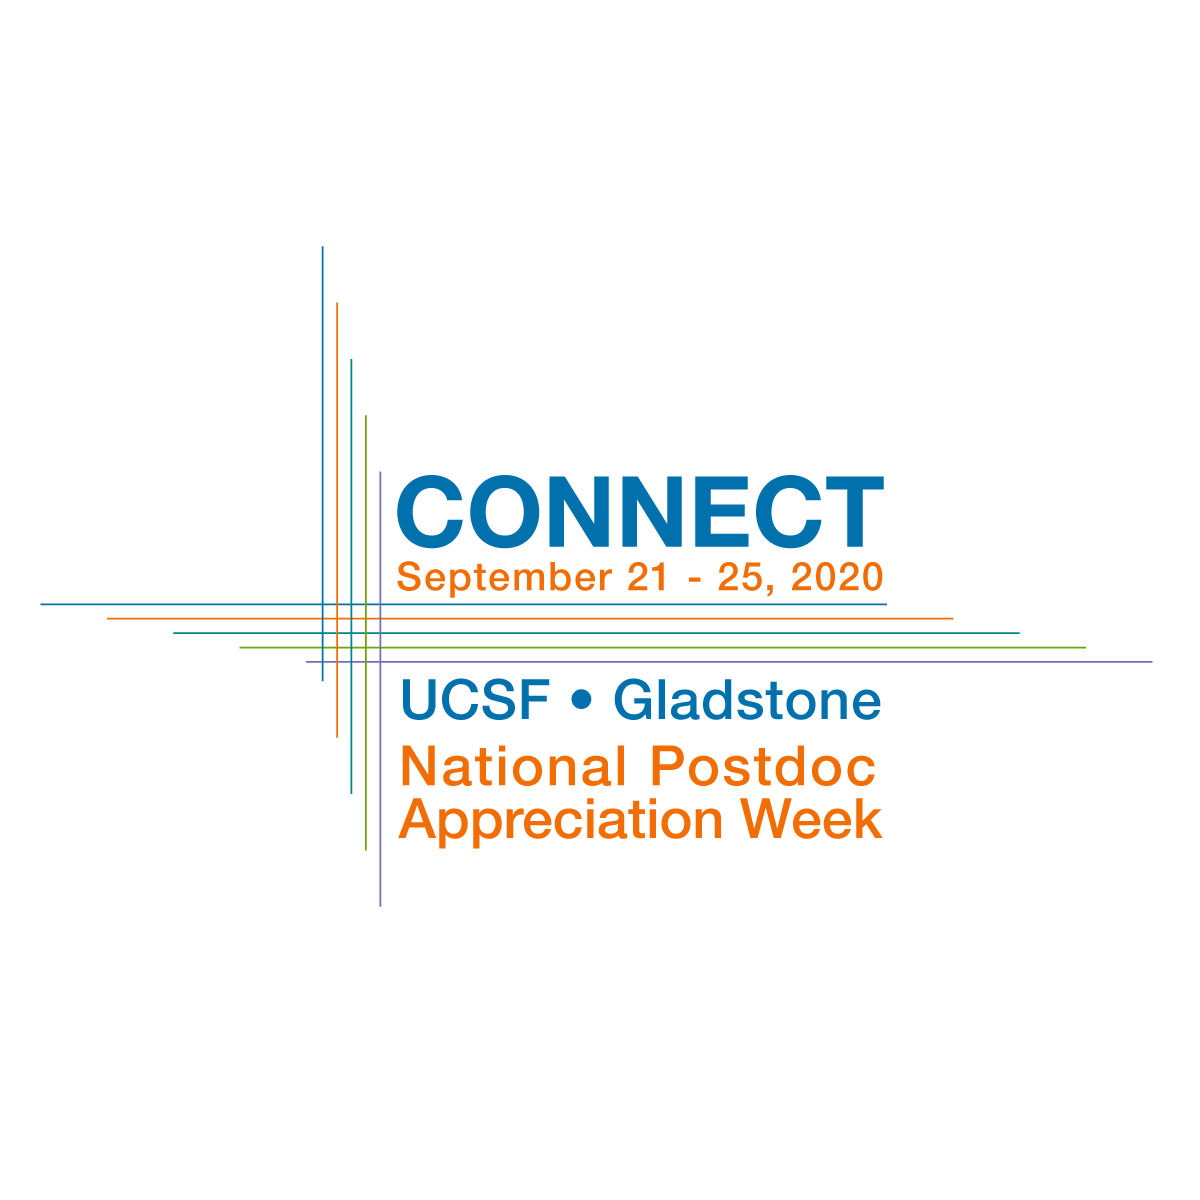 UCSF celebrates National Postdoc Appreciation Week!